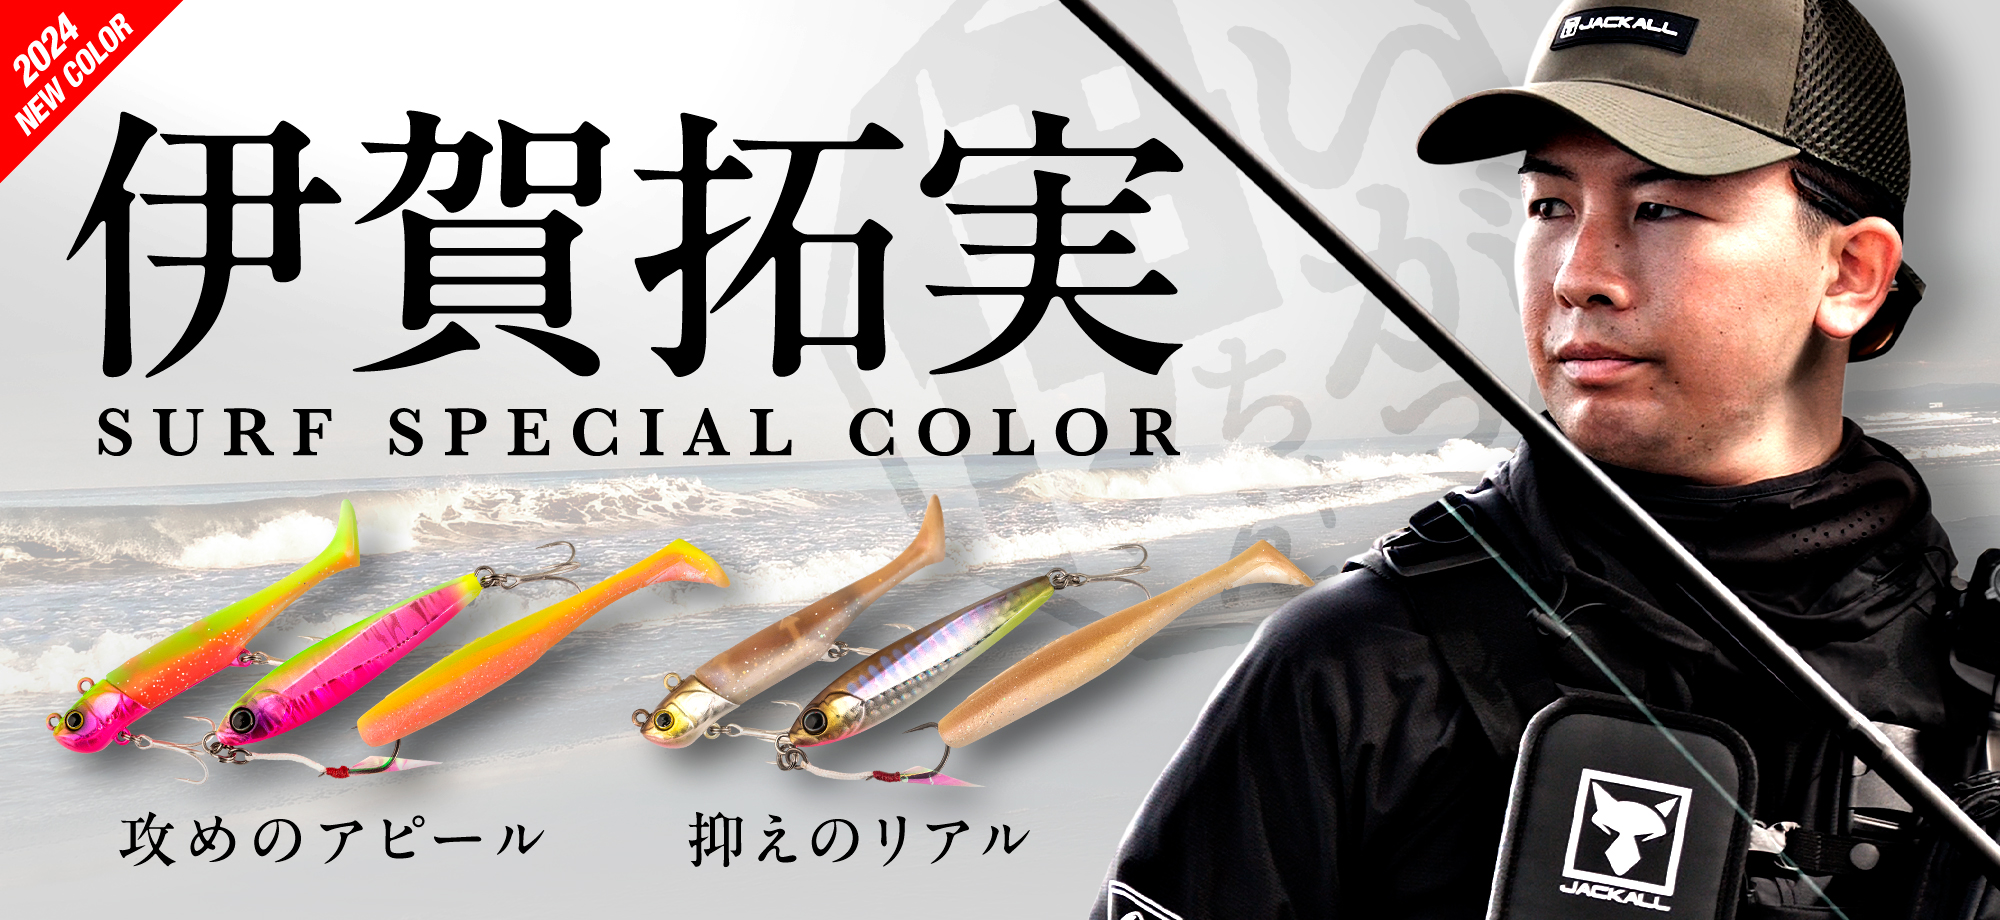 伊賀 color series